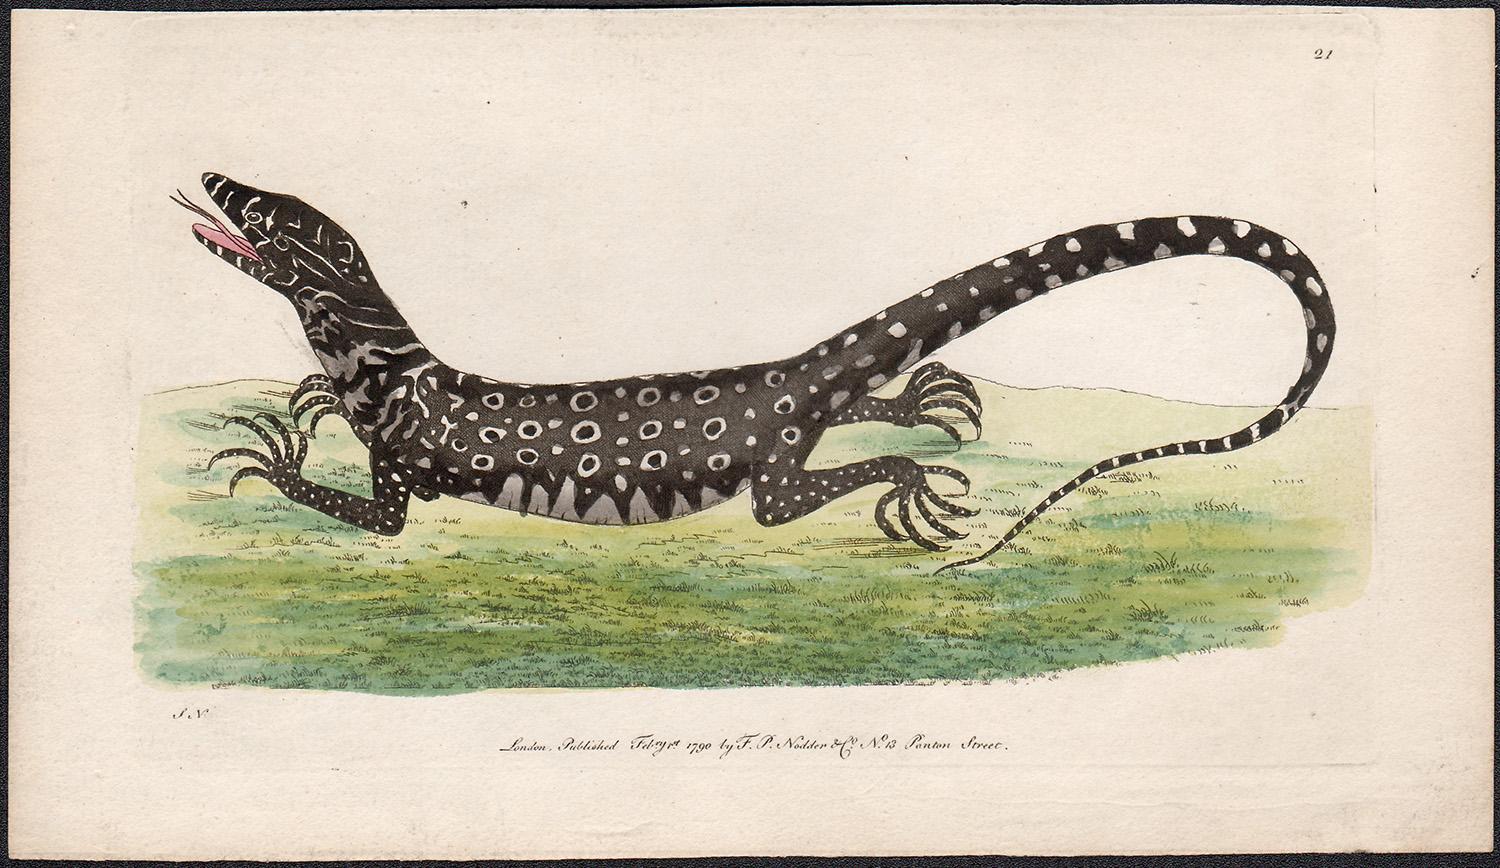 The Monitory Lizard, Australie, gravure avec coloration à la main originale, 1790 - Print de Frederick Polydore Nodder